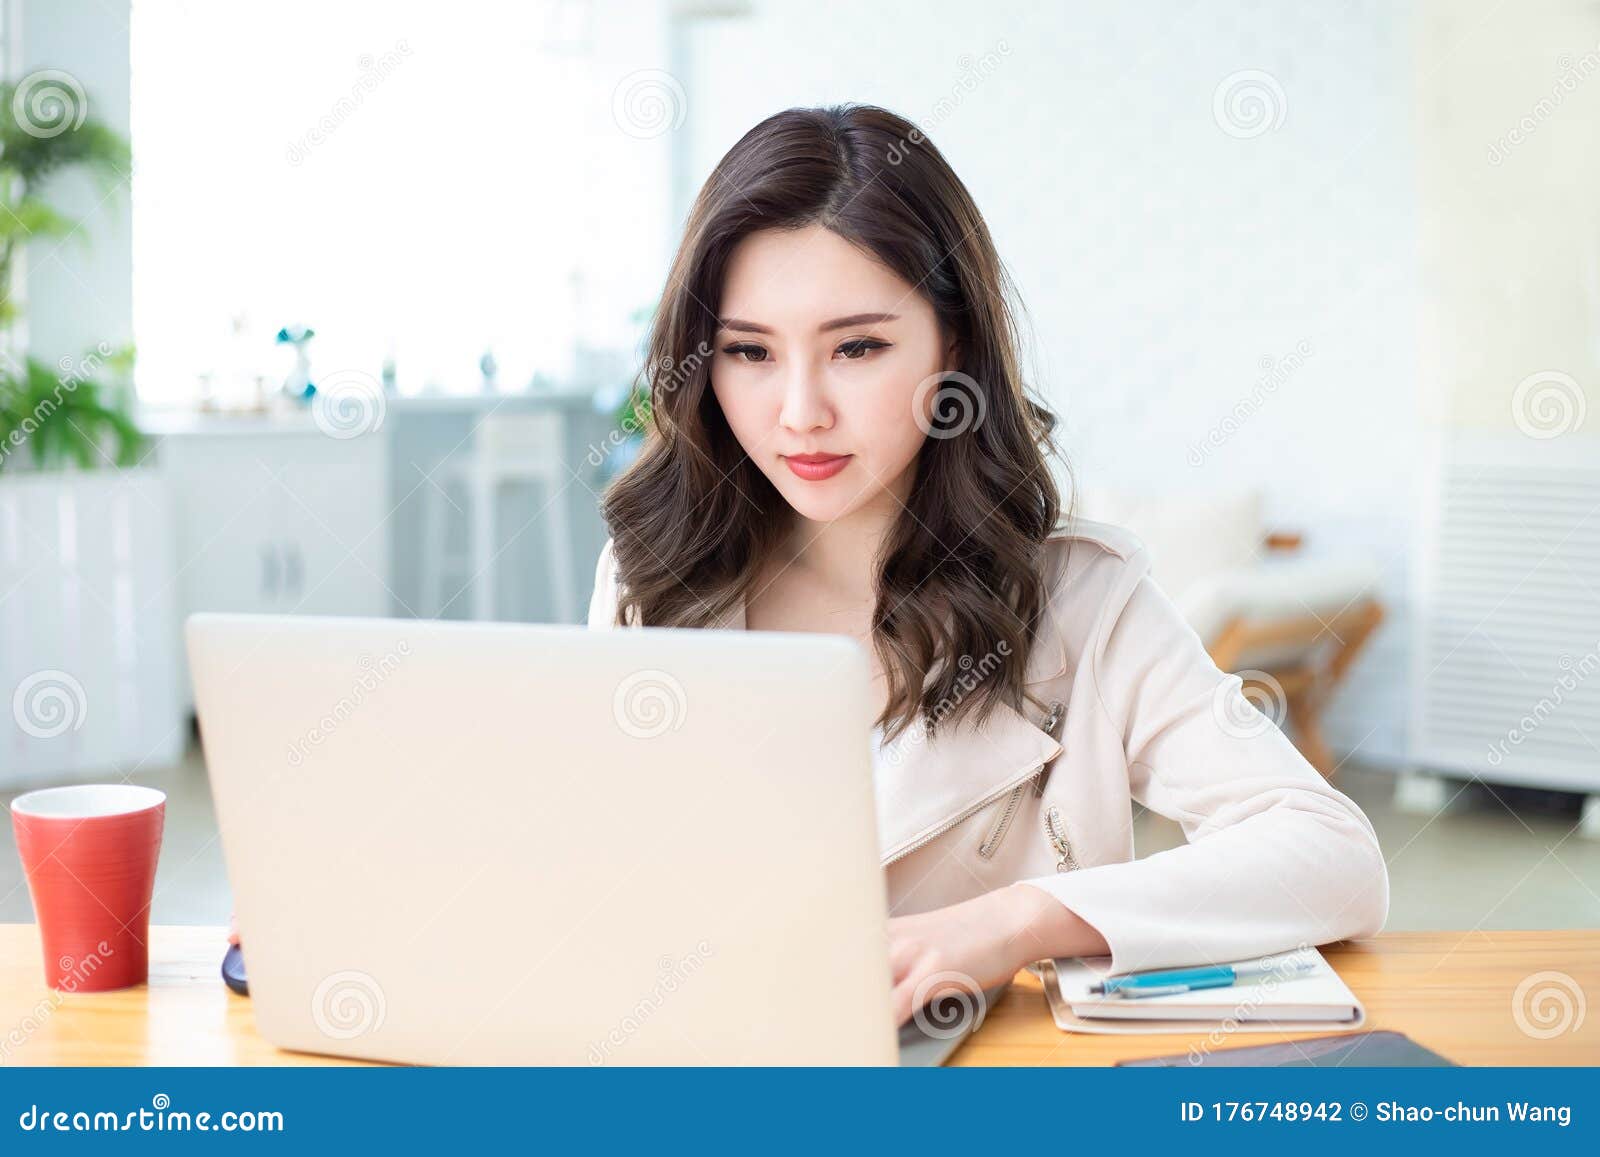 asian woman telework at home